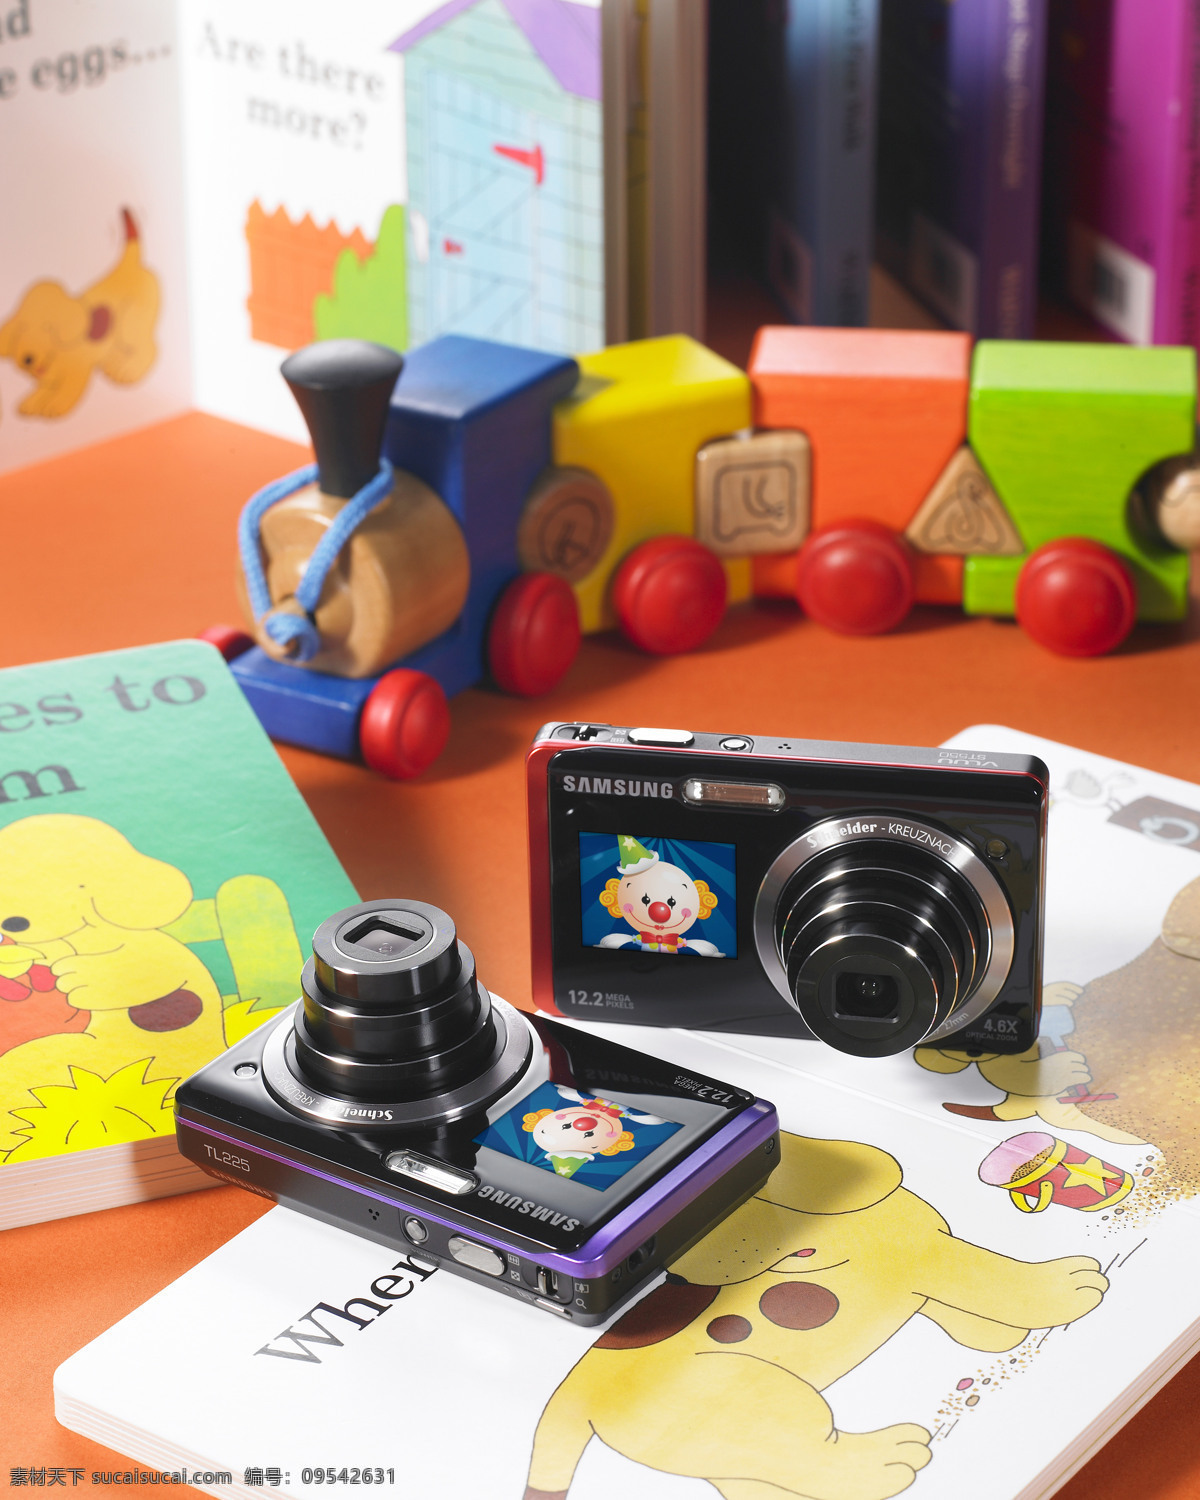 三星 数码相机 儿童玩具 生活百科 数码家电 三星数码相机 卡片机 psd源文件